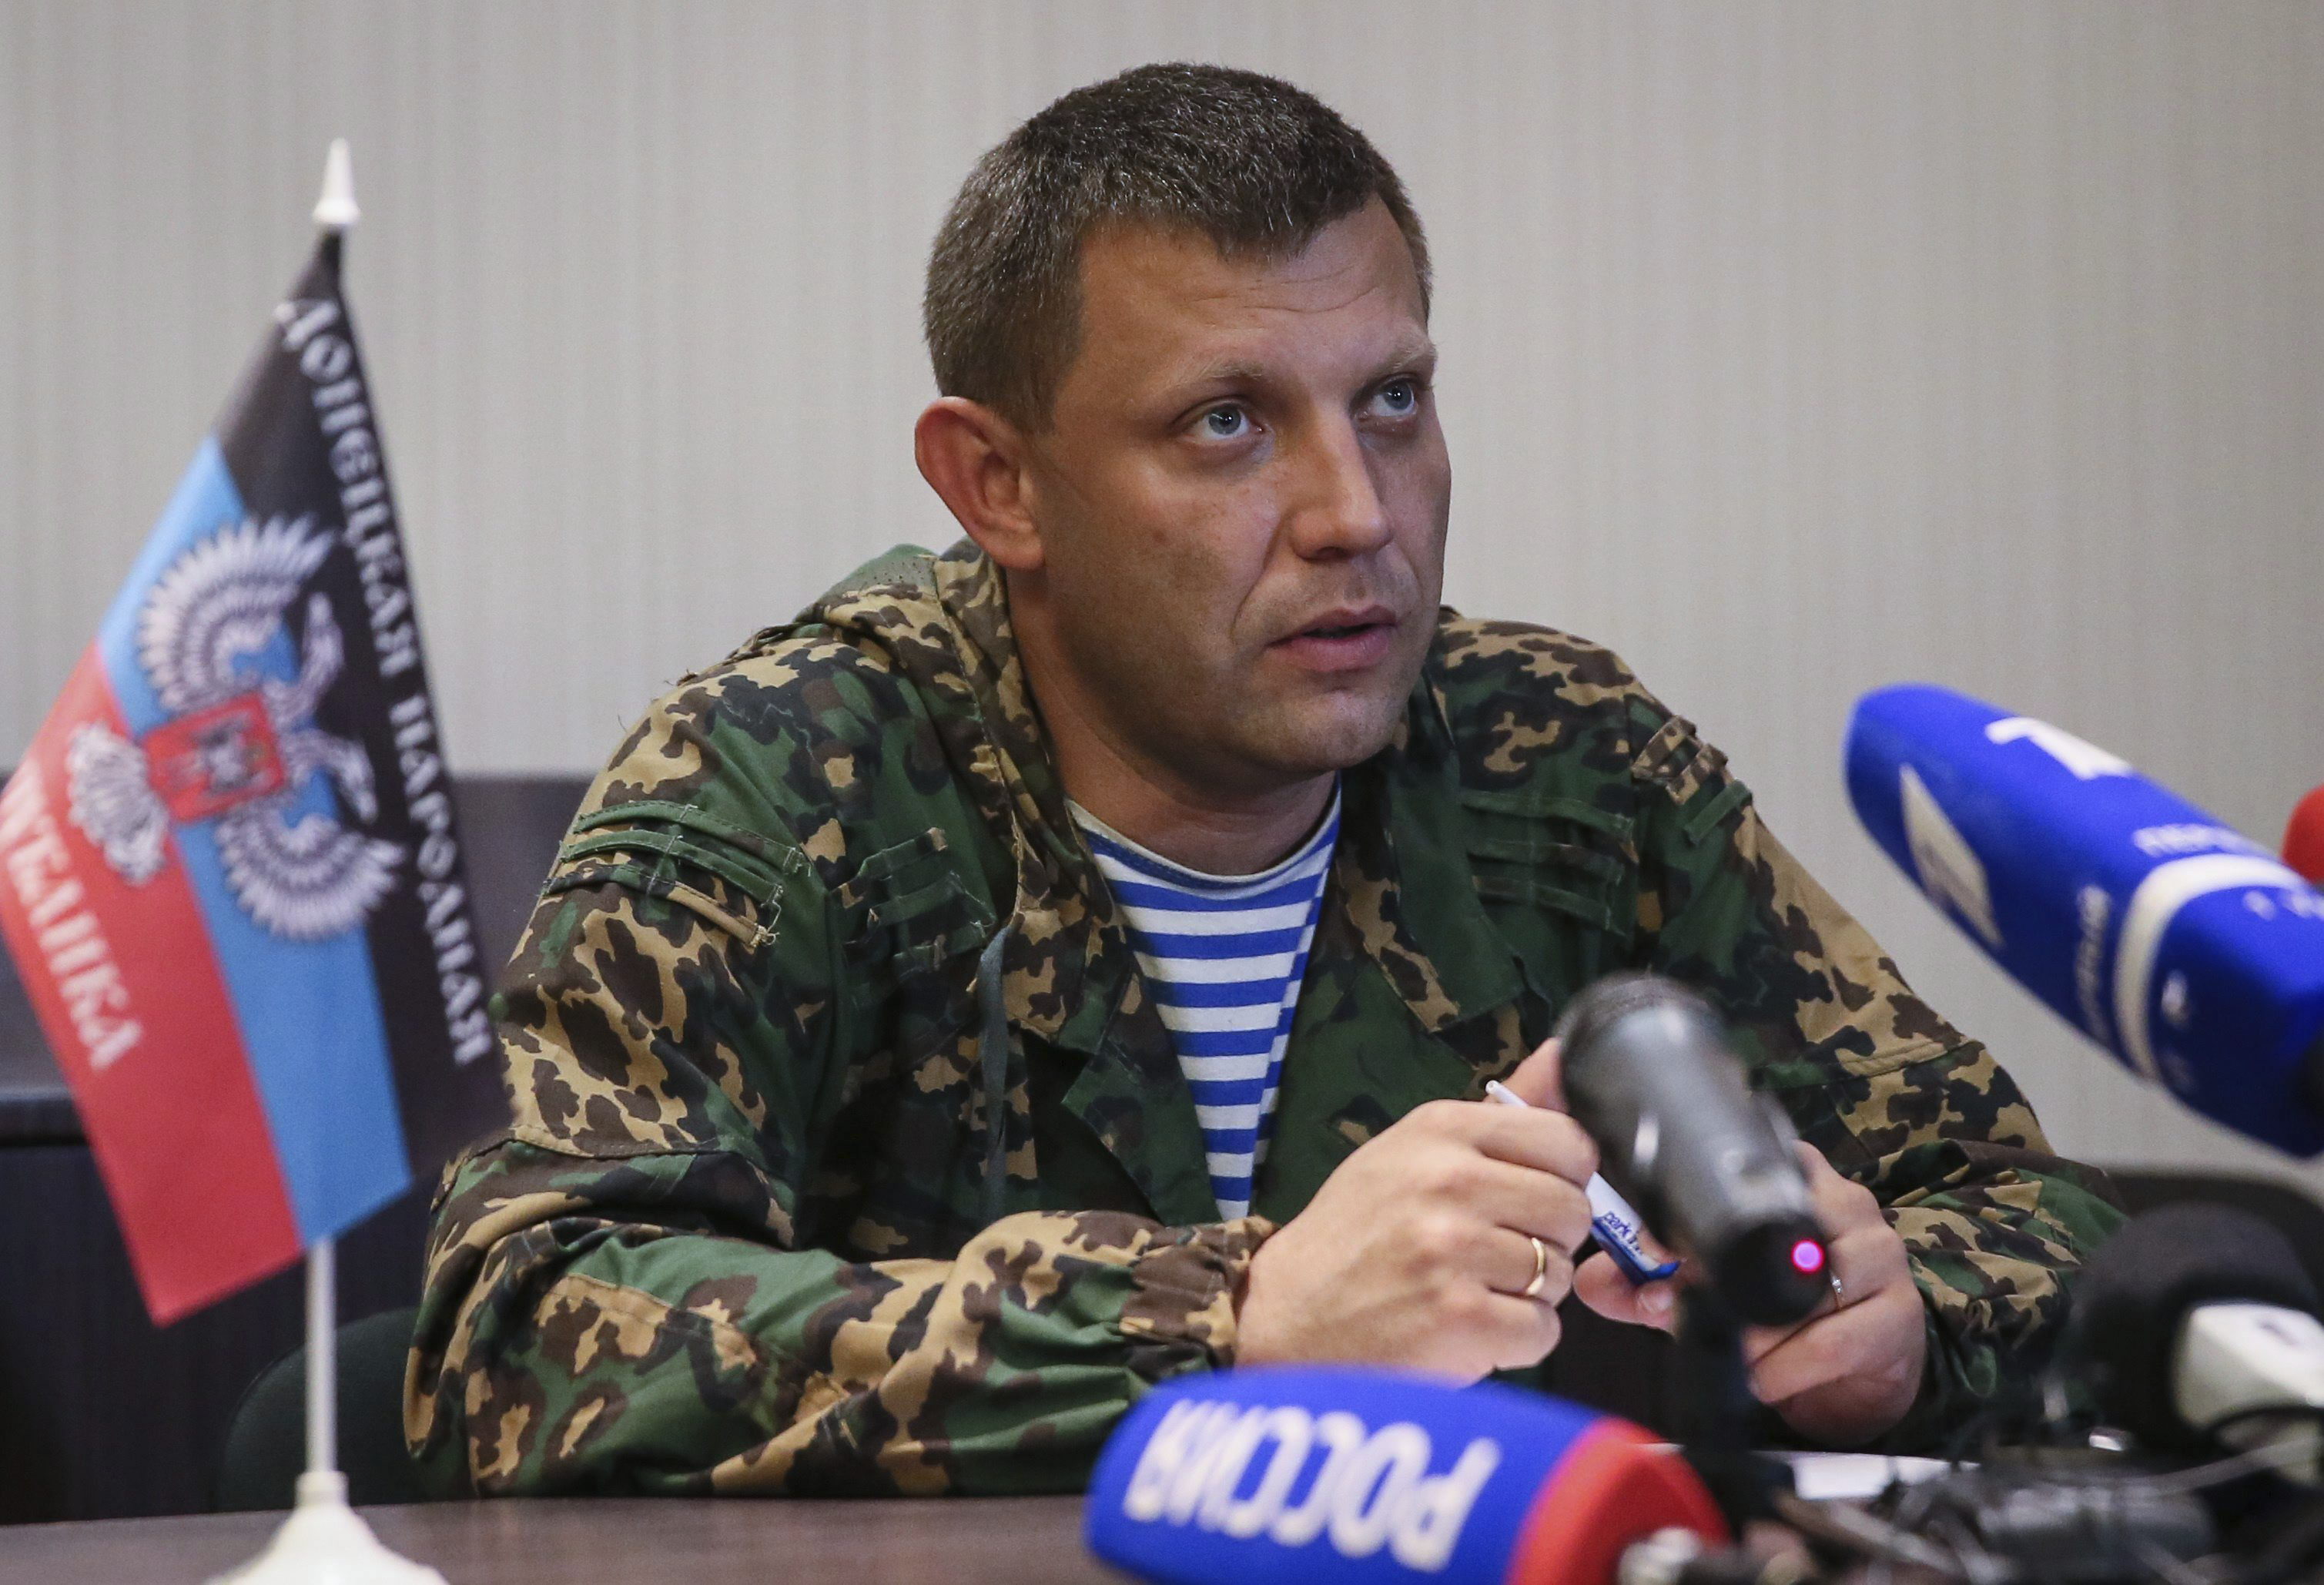 El líder de Donetsk dijo que tienen pruebas sobre el uso de armas prohibidas (de racimo) por parte de las fuerzas de Kiev.